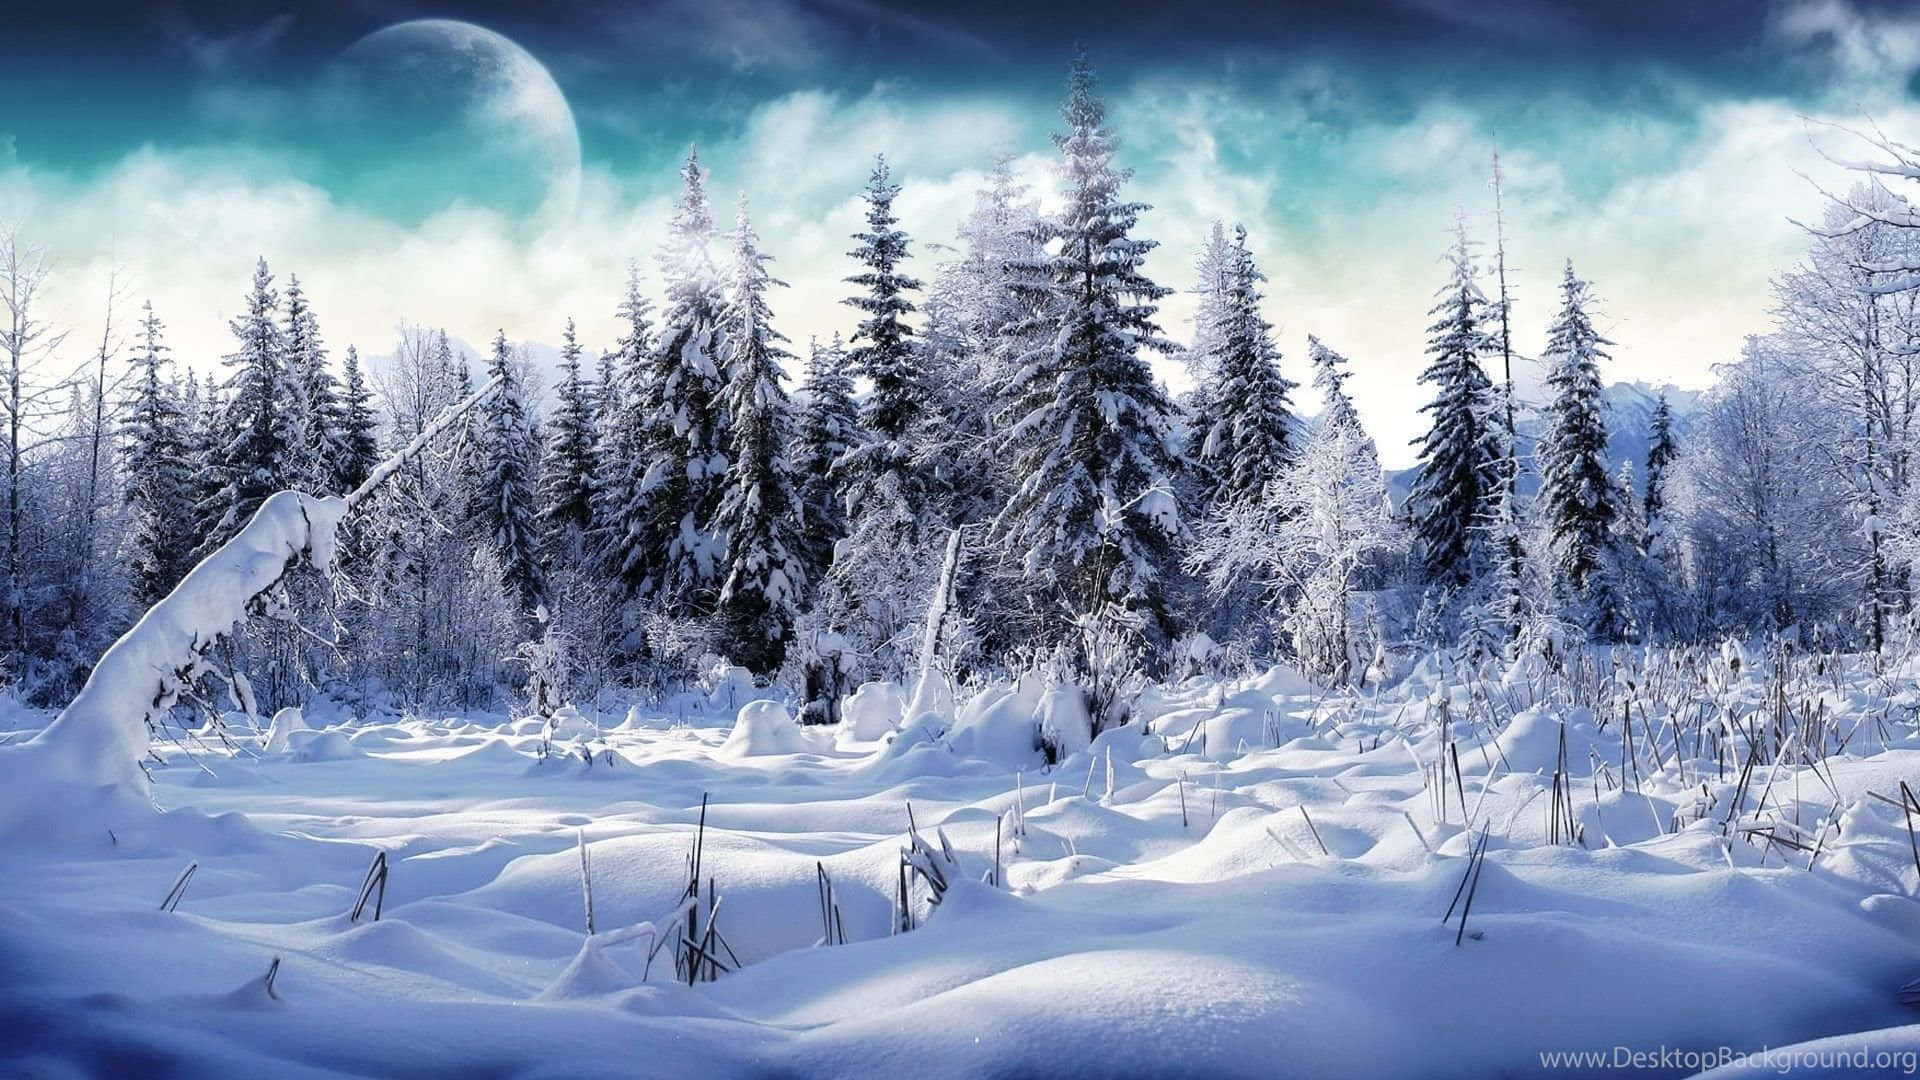 Với những bức ảnh tuyết trắng tinh khiết và đẹp nhất, bạn sẽ được trải nghiệm những khoảnh khắc đặc biệt và lãng mạn của mùa đông. Hãy cùng chiêm ngưỡng và tìm kiếm những bức ảnh đẹp nhất để đưa vào bộ sưu tập của bạn. Bạn sẽ không muốn bỏ qua những khoảnh khắc độc đáo và tuyệt vời này.